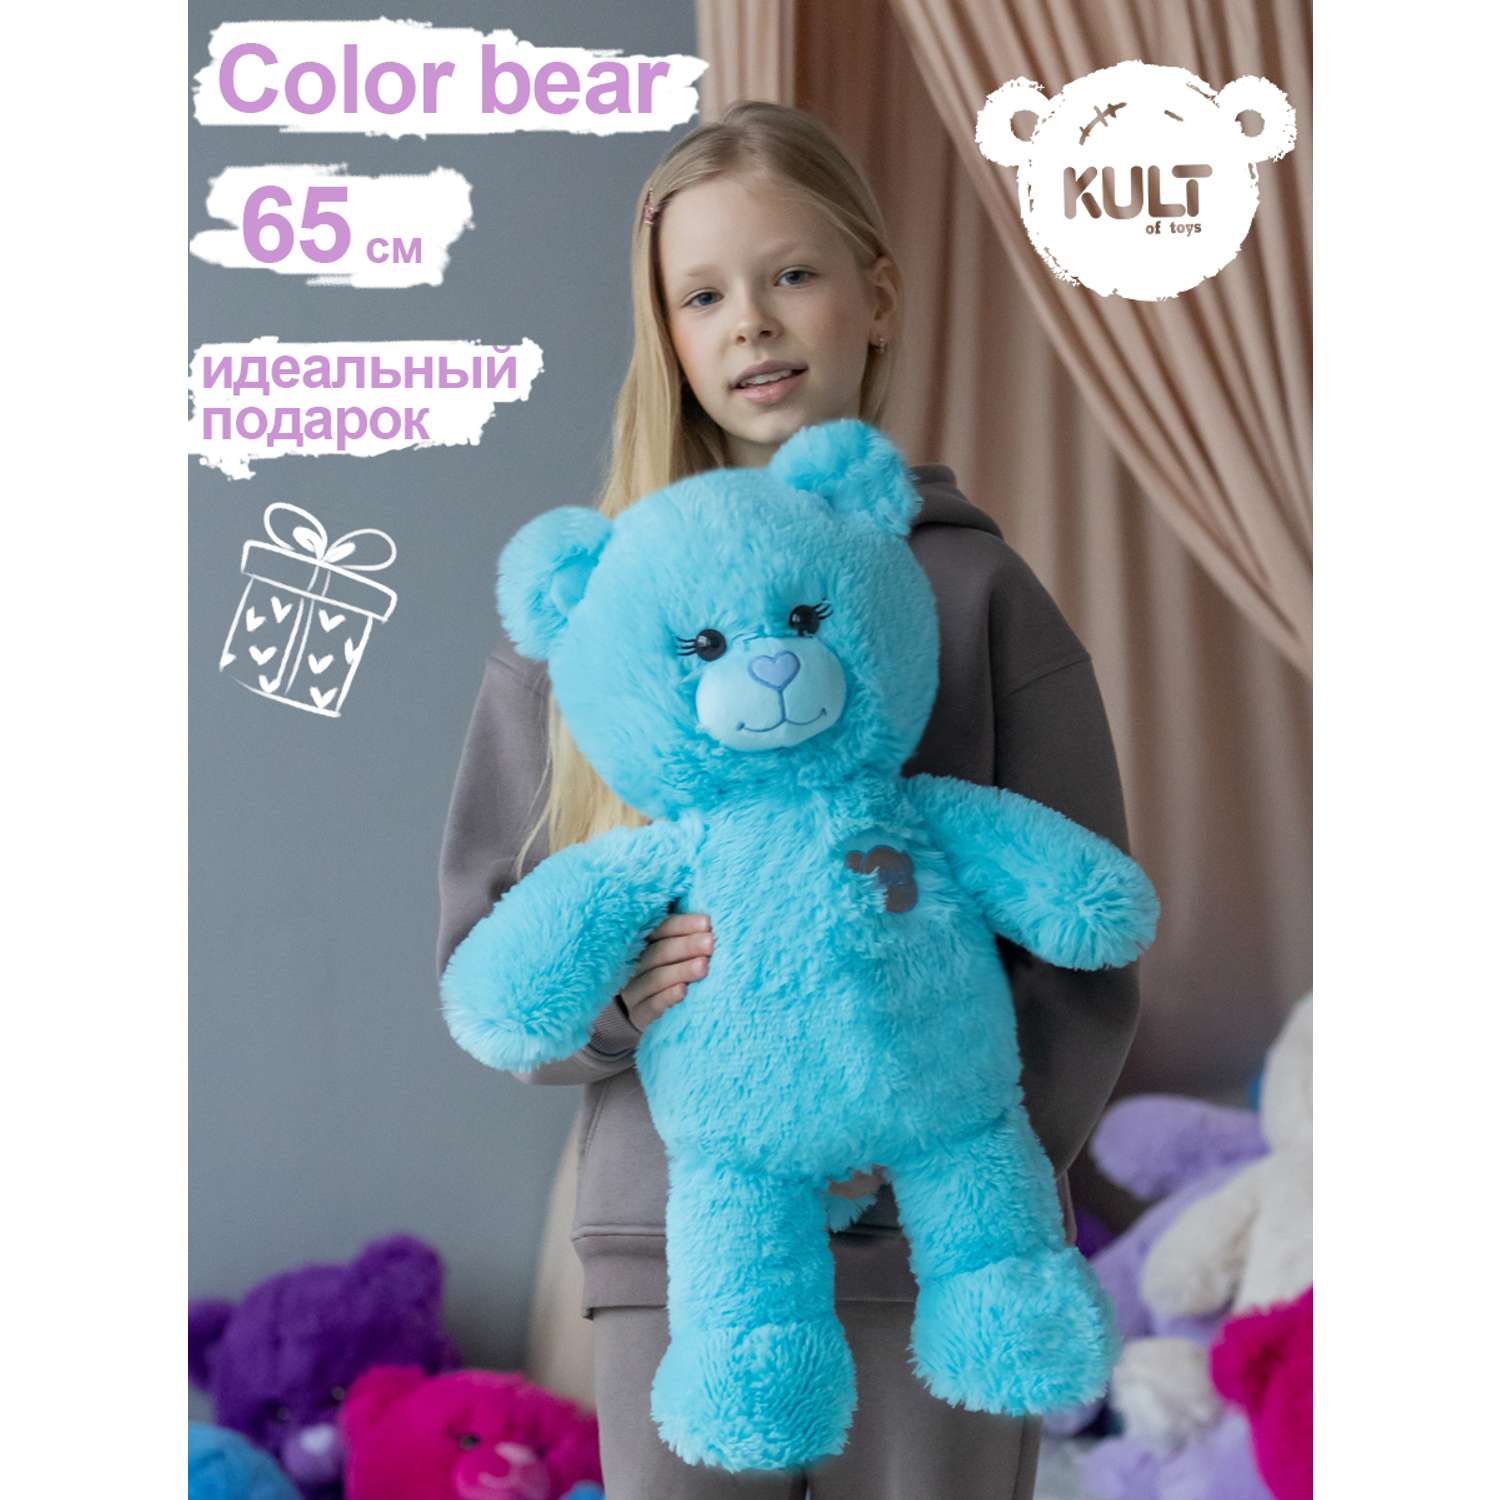 Мягкая игрушка KULT of toys Плюшевый медведь Color 65 см цвет голубой - фото 2